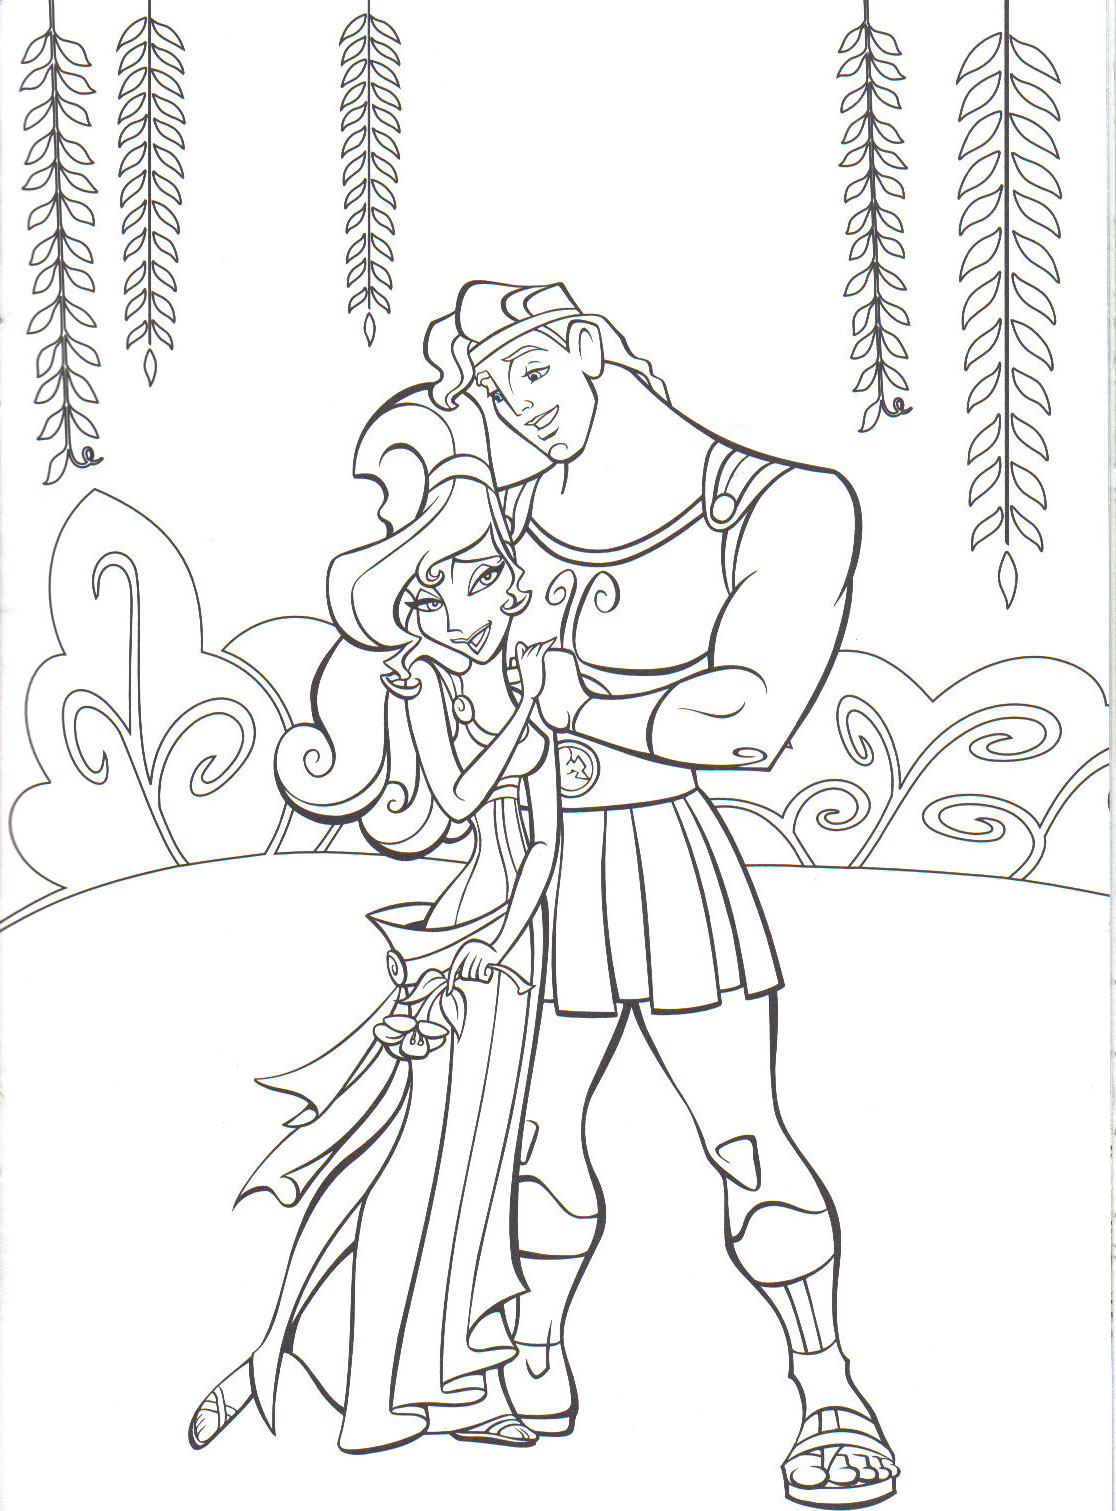 Páginas para colorear gratis de Hércules (Disney)